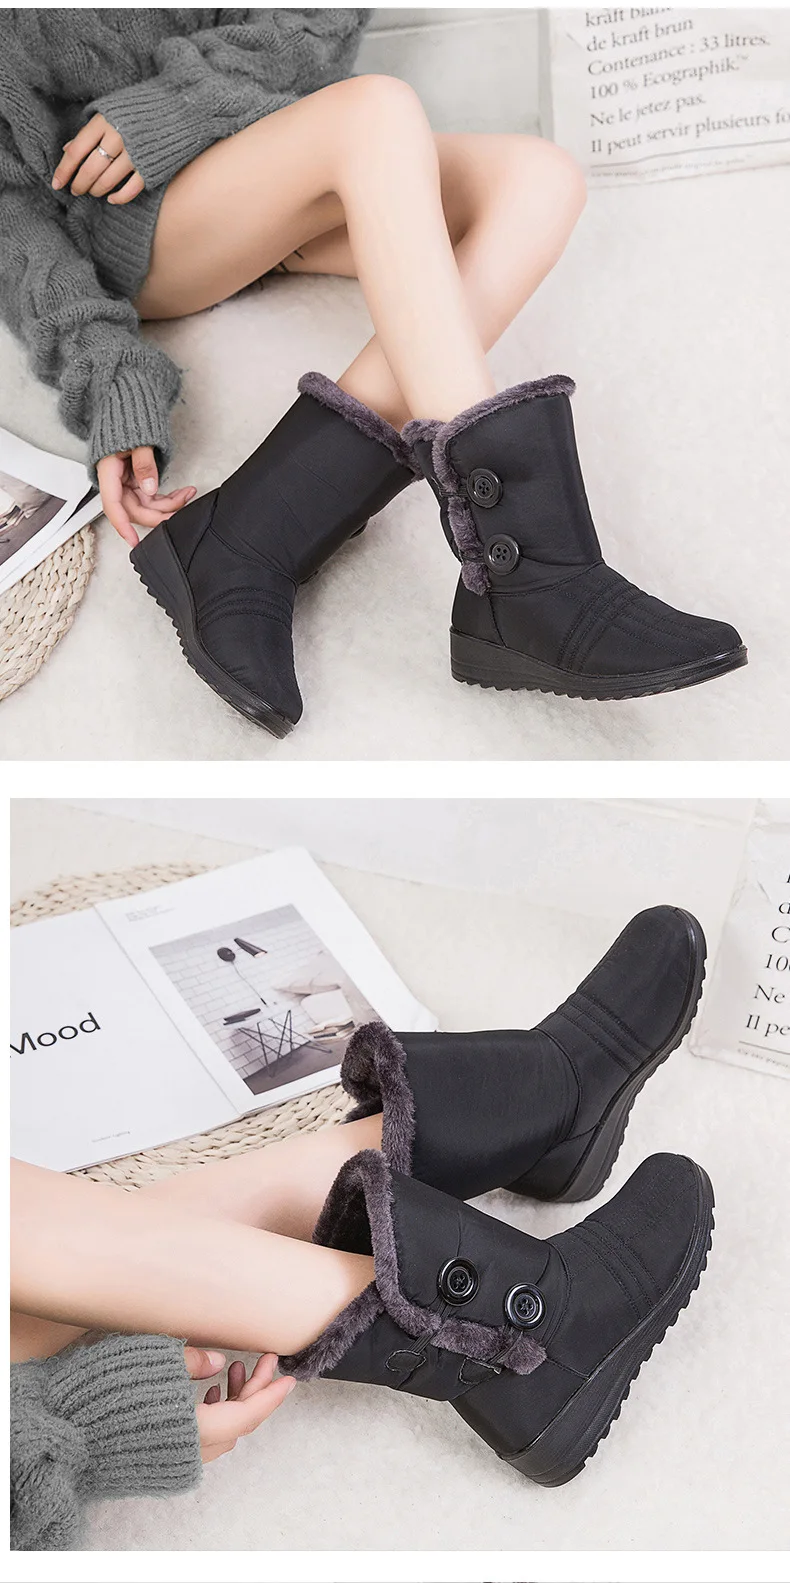 YWEEN/зимние женские ботинки; ботинки до середины икры; высокие водонепроницаемые женские зимние ботинки; женская плюшевая стелька; botas mujer invierno